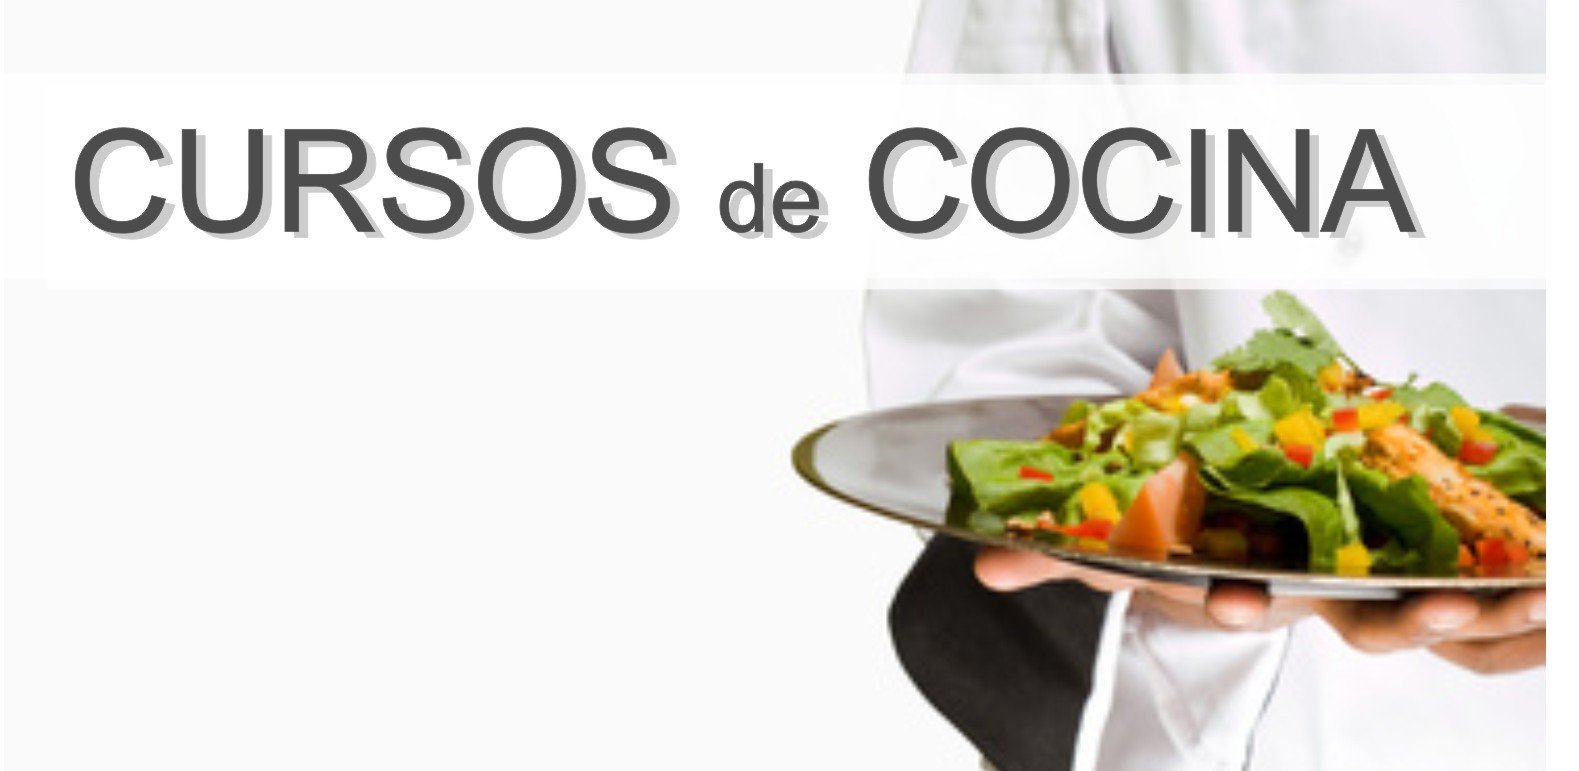 Curso de cocina en Madrid. - Cursos Dcursos.com Cursos y ...